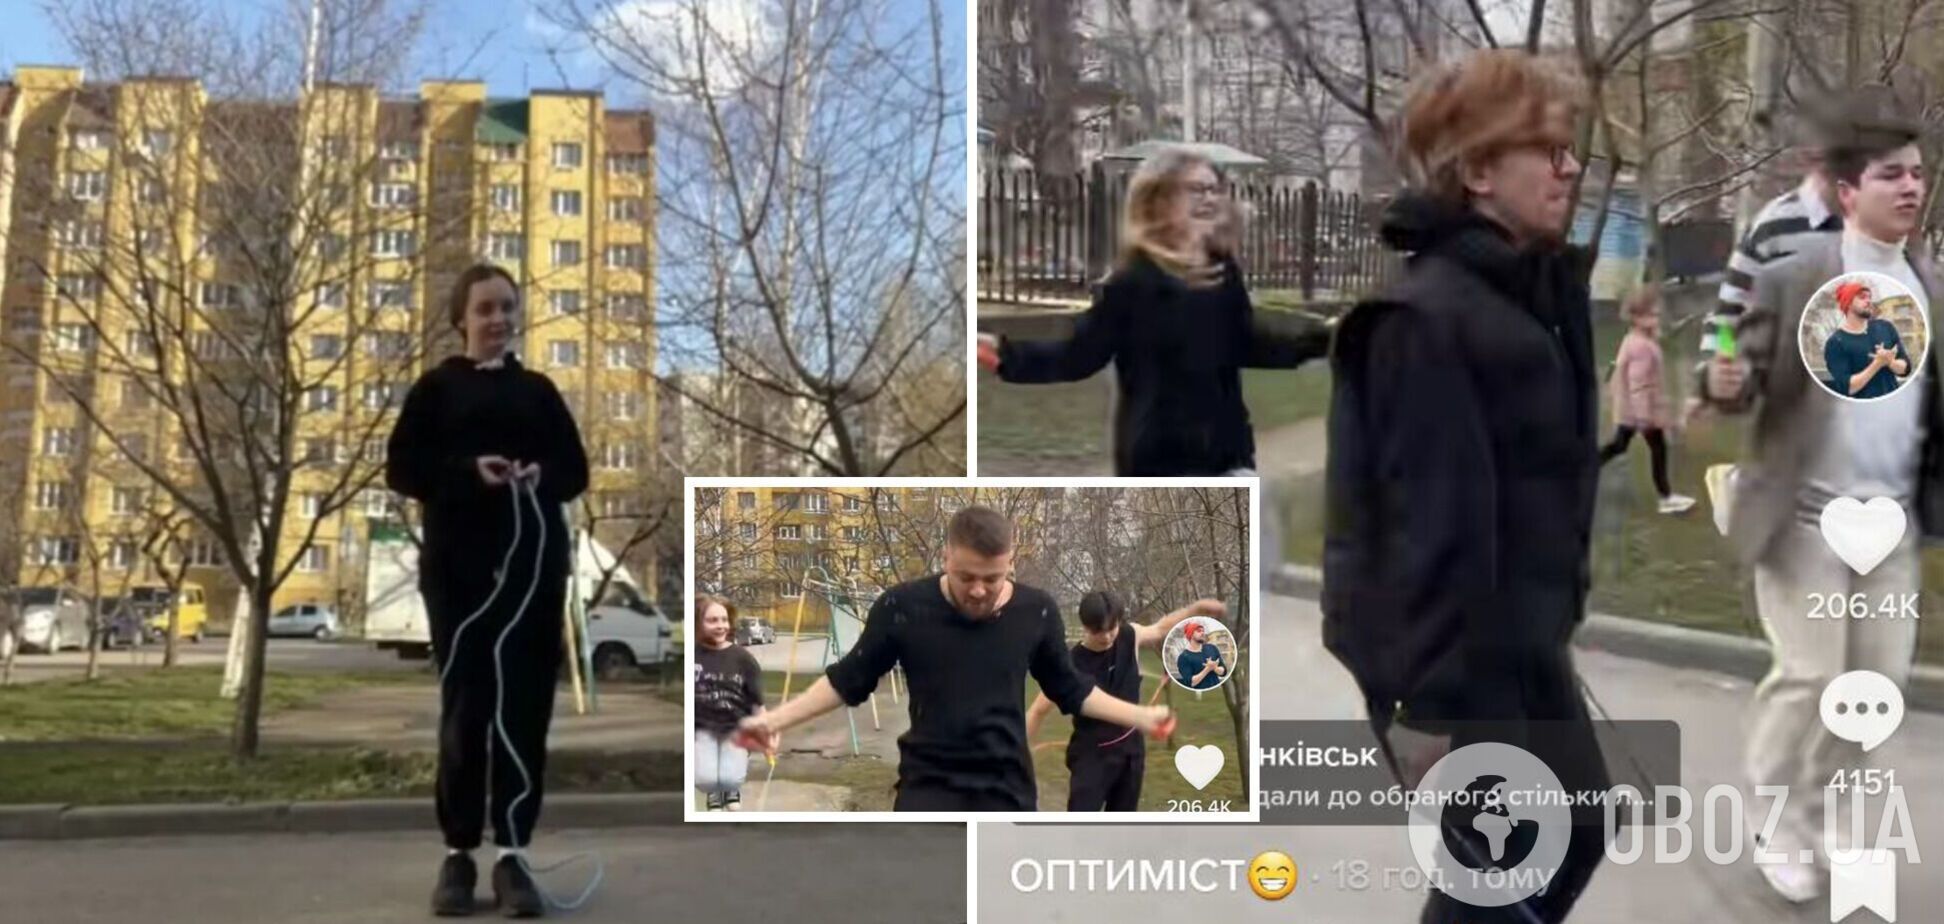 'Хто не скаче, той…': скандал із пенсіонеркою і дівчиною в Івано-Франківську через скакалку отримав несподіване продовження. Відео 